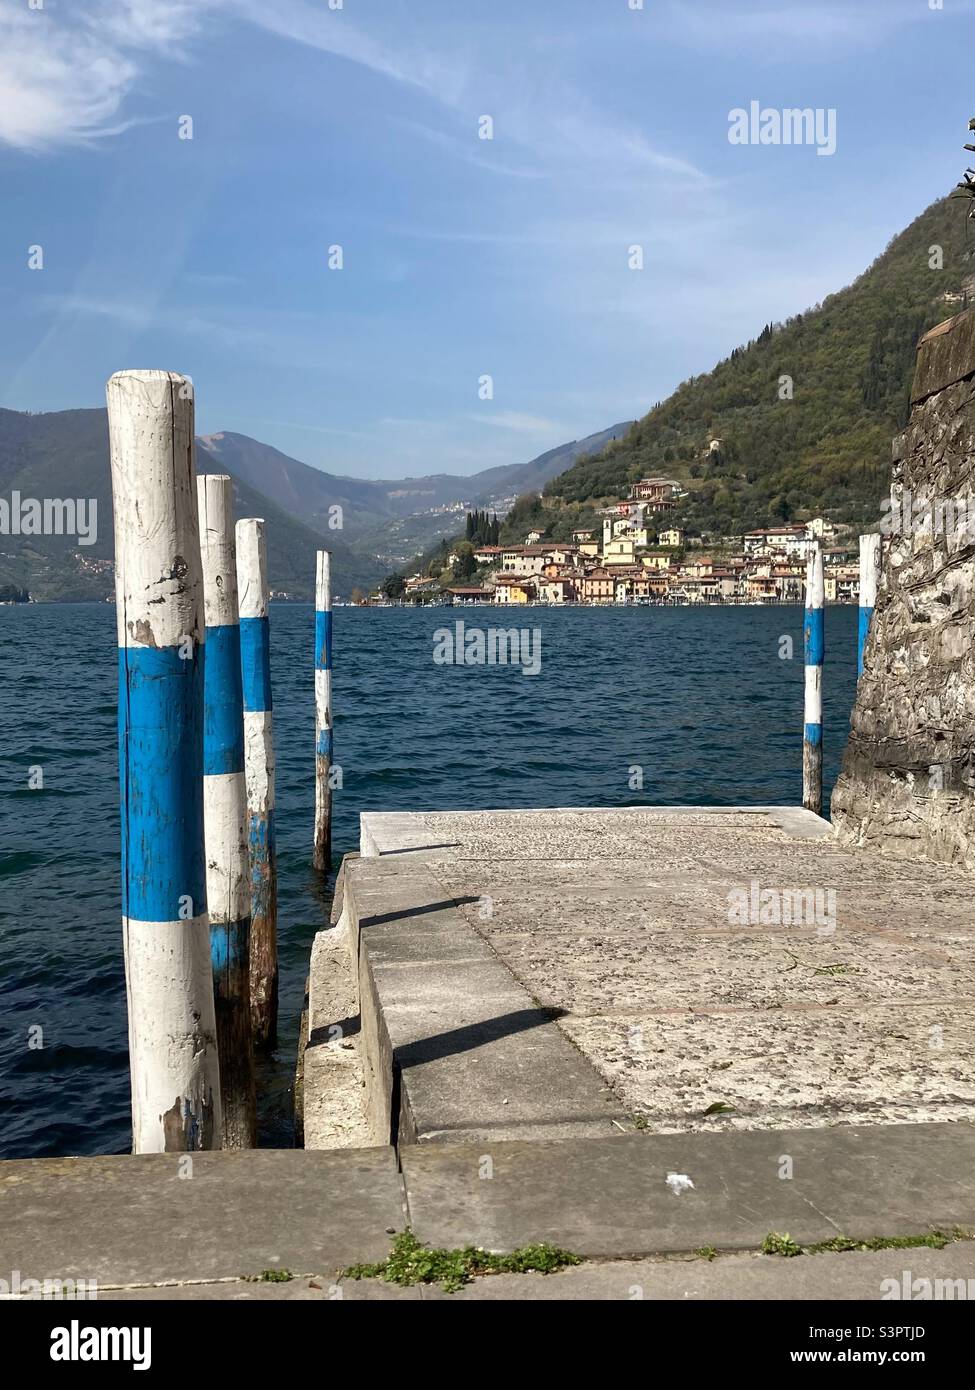 Ein Fährhafen in Sulzano am Lago d‘Iseo mit der Insel Monte Isola im Hintergrund, Sulzano, Lombardei, Italien Stockfoto